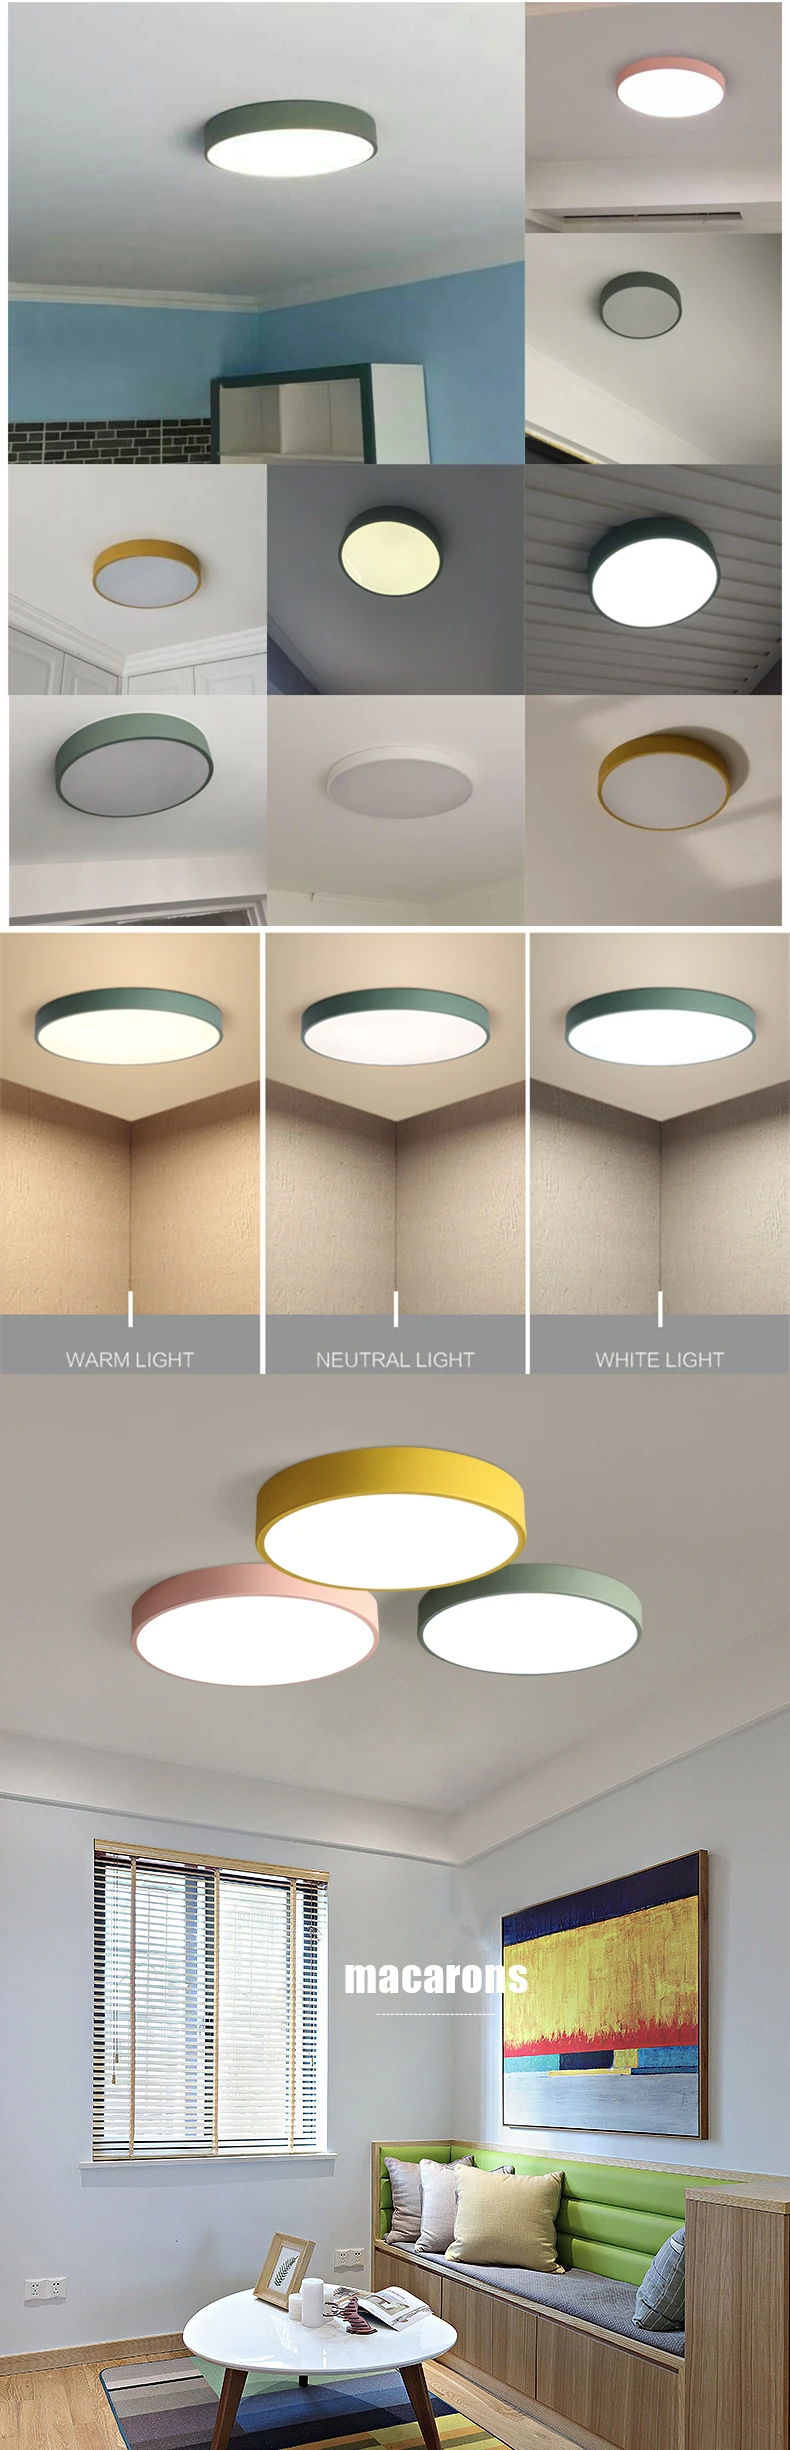 led потолочная лампа светильник потолочный люстра потолочная на кухню современный металлический светодиодный потолочный светильник цветочная круглая люстра потолочная для спальни потолочные светильники для прихожей